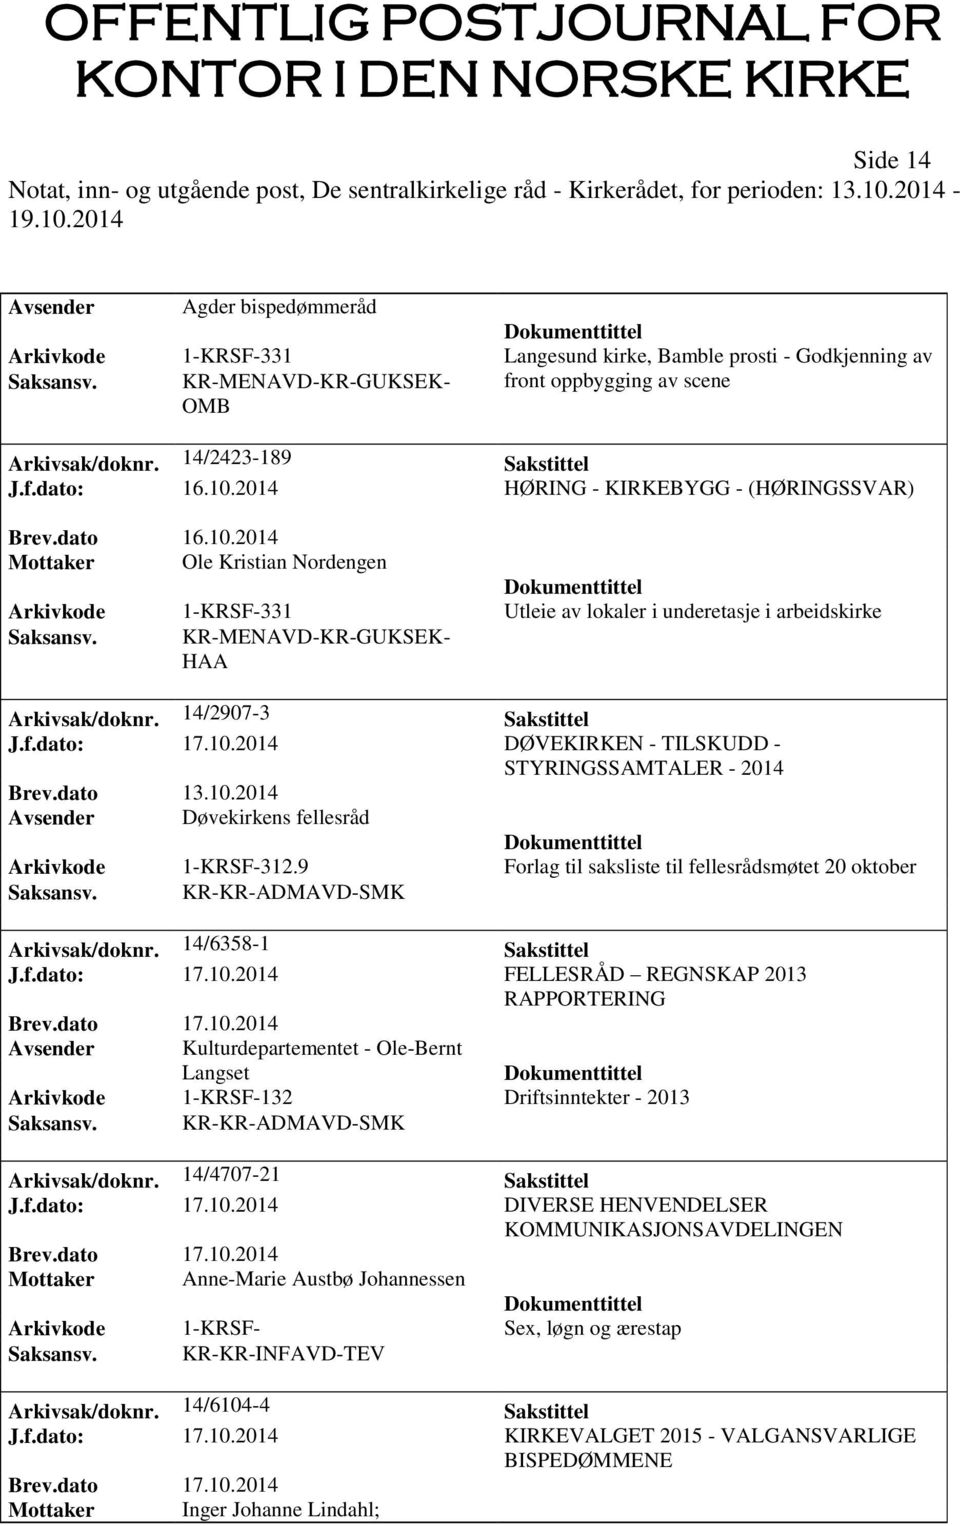 KR-MENAVD-KR-GUKSEK- HAA Arkivsak/doknr. 14/2907-3 Sakstittel J.f.dato: 17.10.2014 DØVEKIRKEN - TILSKUDD - STYRINGSSAMTALER - 2014 Avsender Døvekirkens fellesråd Arkivkode 1-KRSF-312.